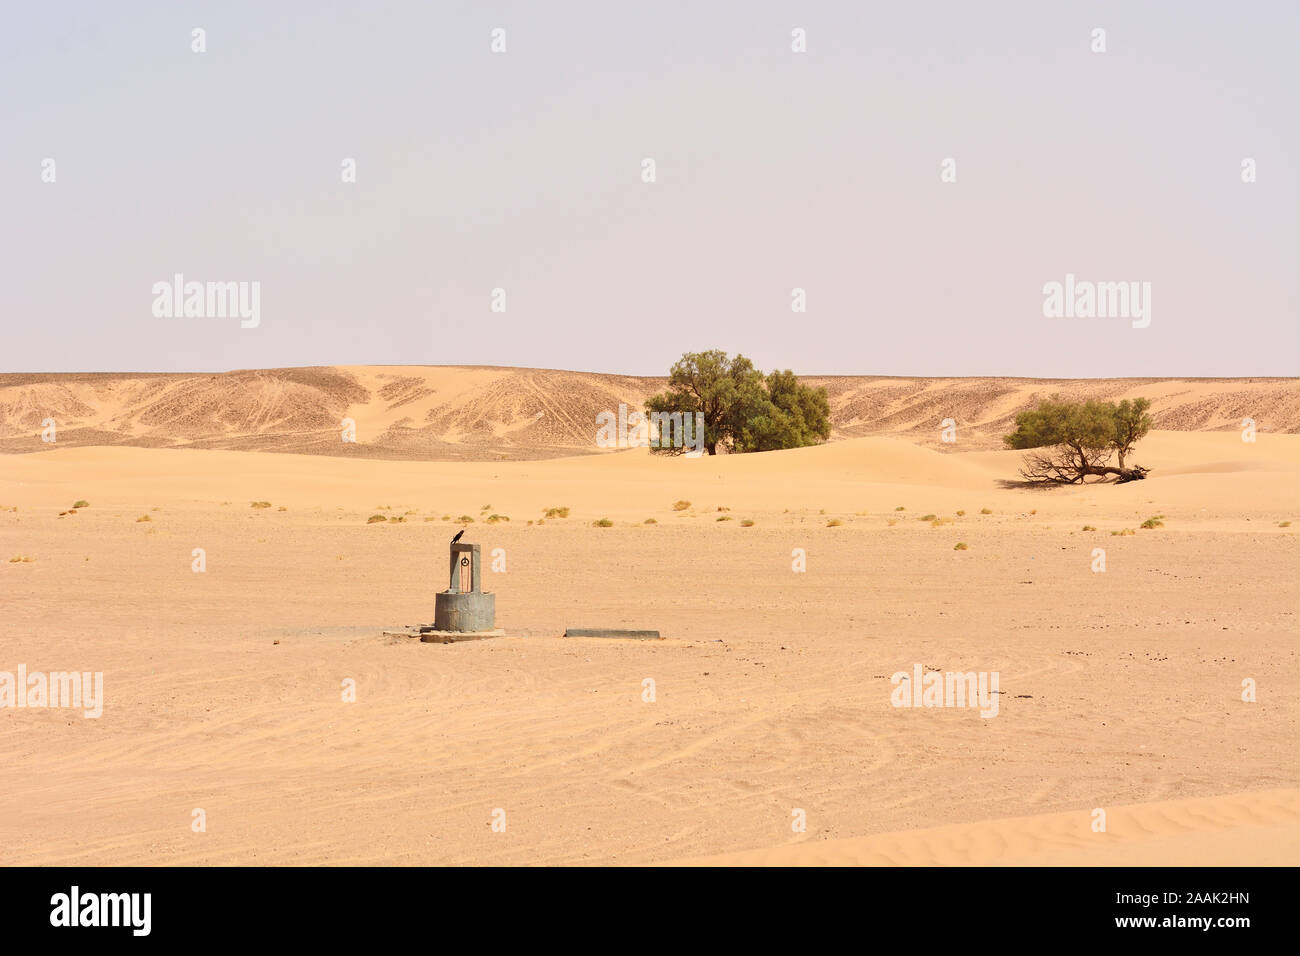 Water well in the desert. Erg Chigaga, Morocco Stock Photo